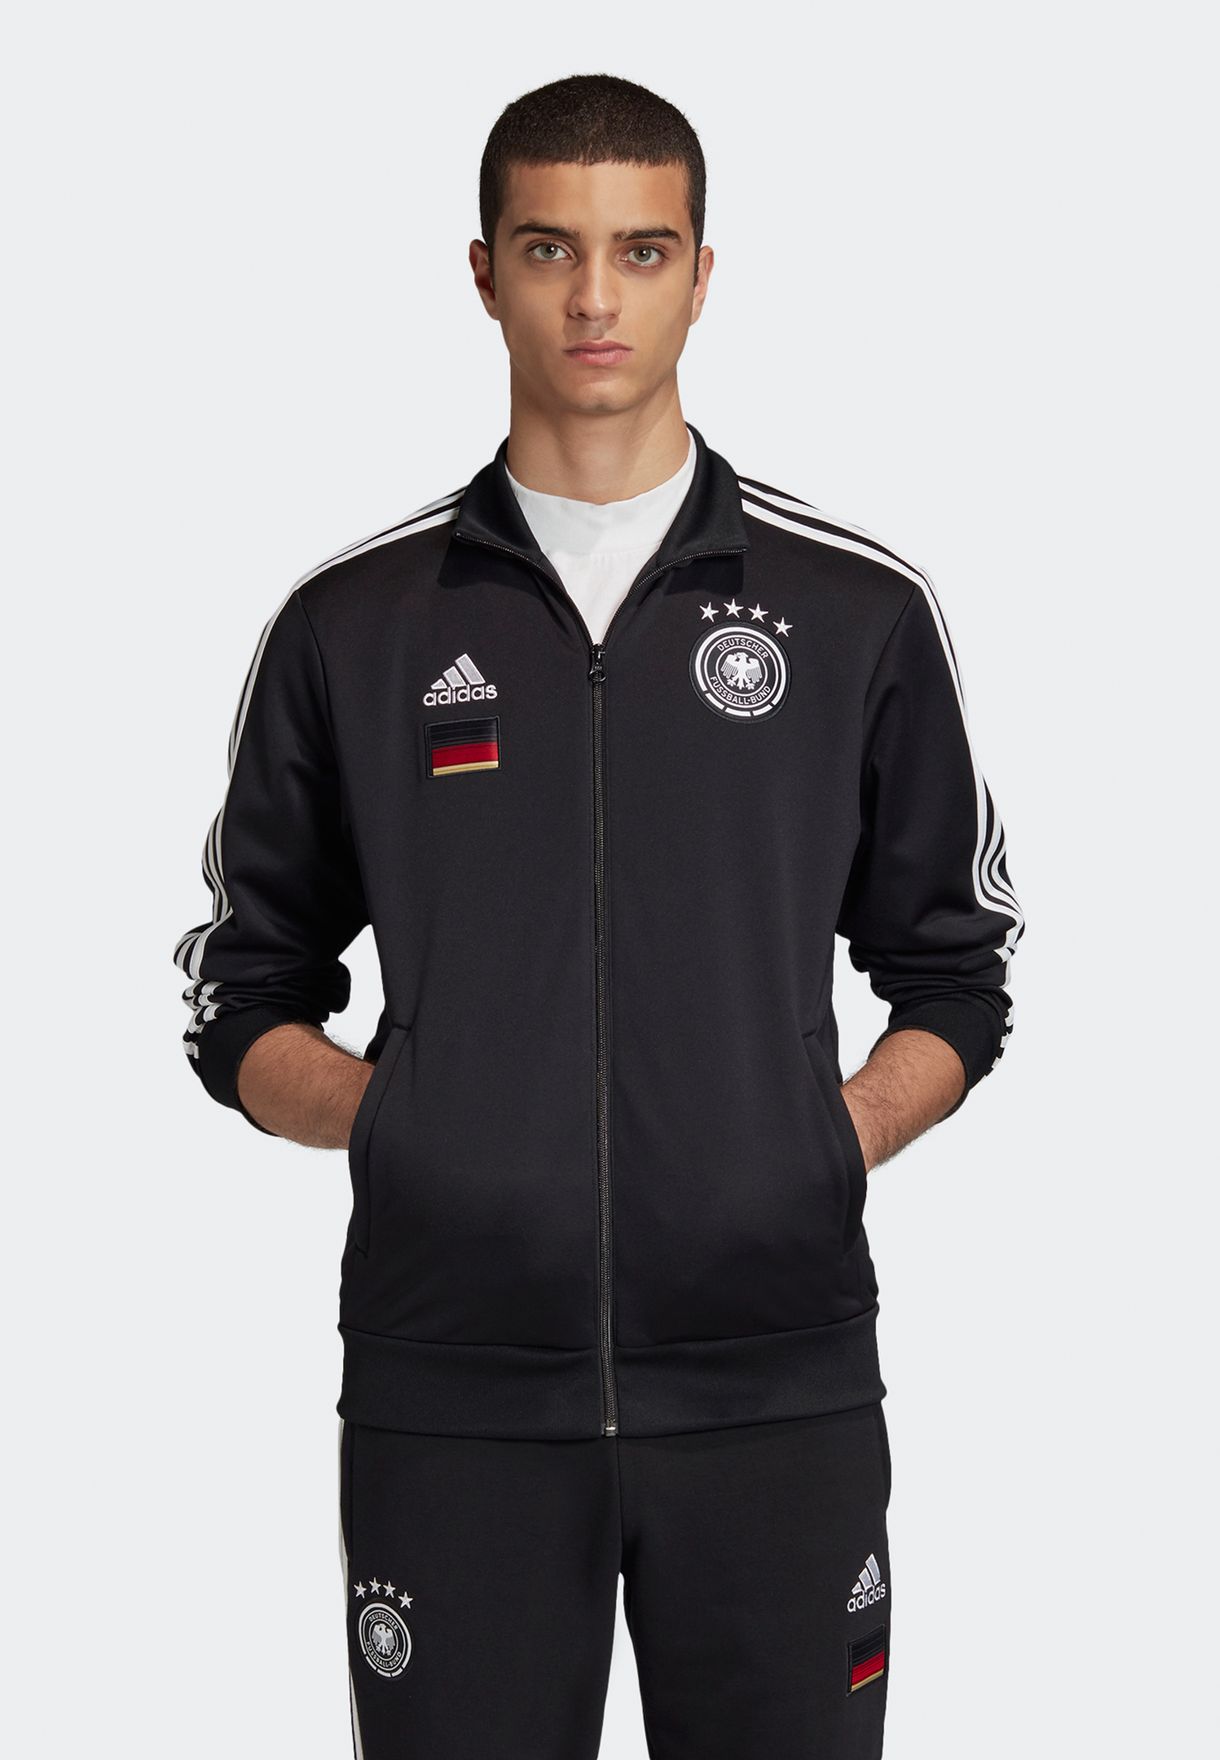 Адидас сборная германии. Adidas DFB "Германия". Deutscher Fussball Bund adidas спортивный костюм. Adidas DFB костюм. Олимпийка adidas Euro 2006 Germany.